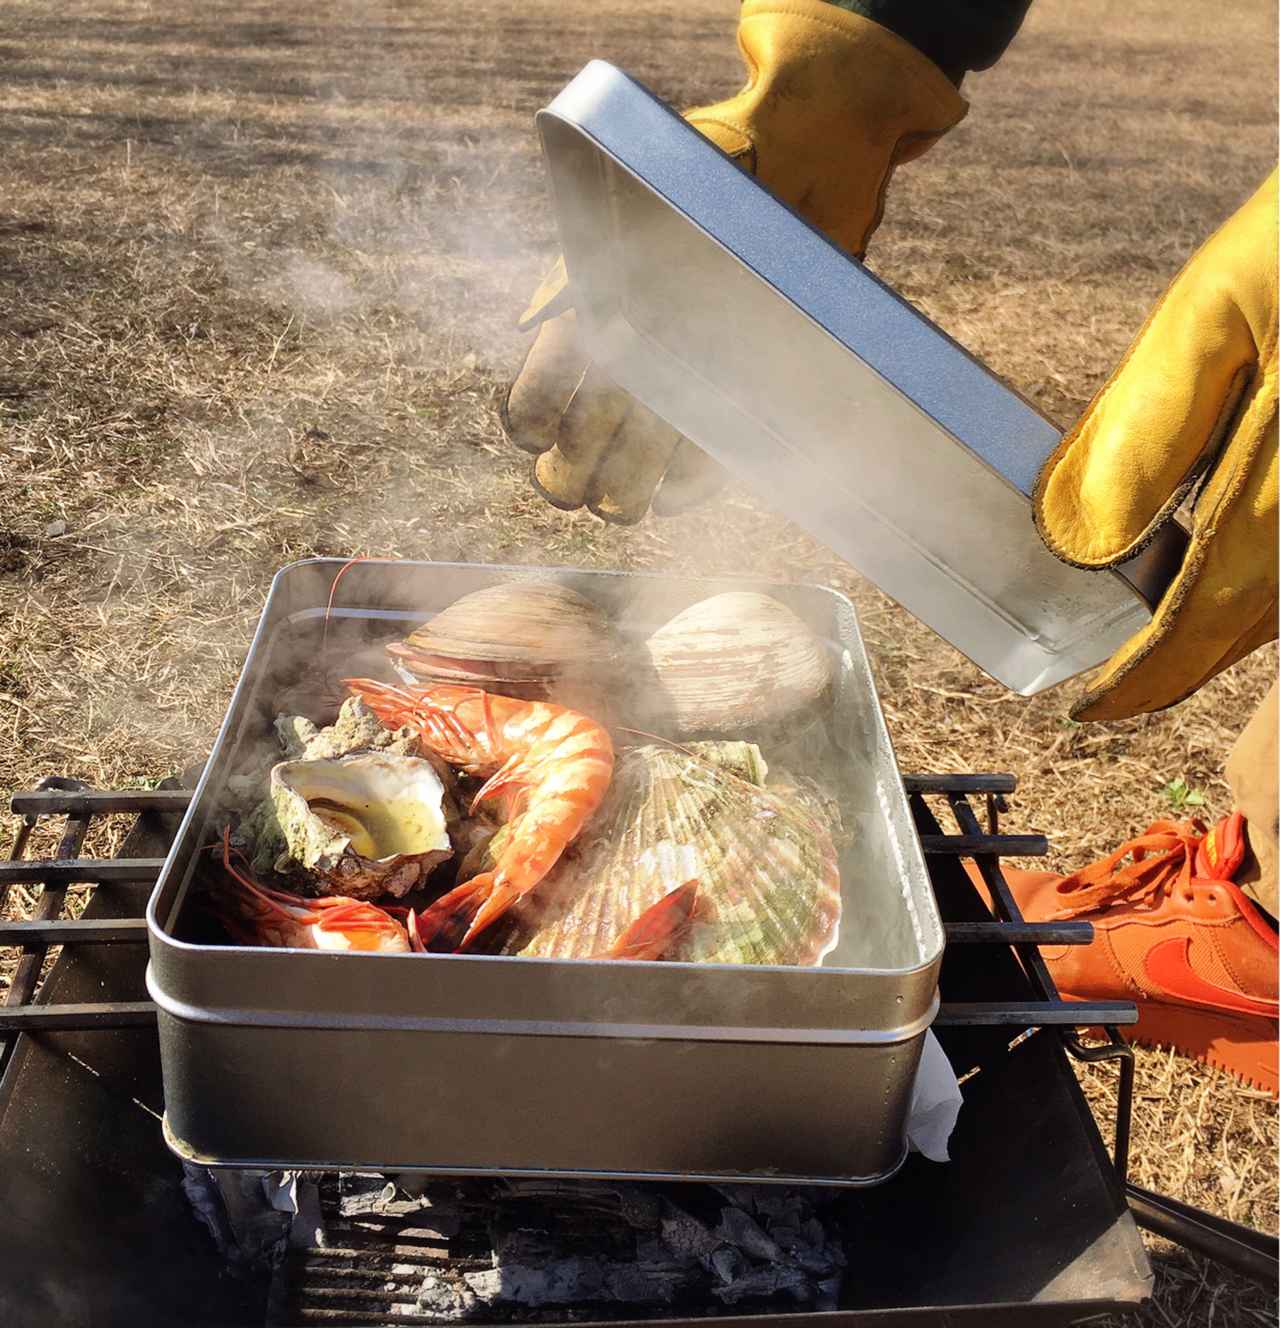 プロ直伝 ぷりっぷりな海鮮が簡単に食べられる カンカン焼き レシピ バーベキューや簡単キャンプ飯にも お役立ちキャンプ情報 21年04月12日 日本気象協会 Tenki Jp